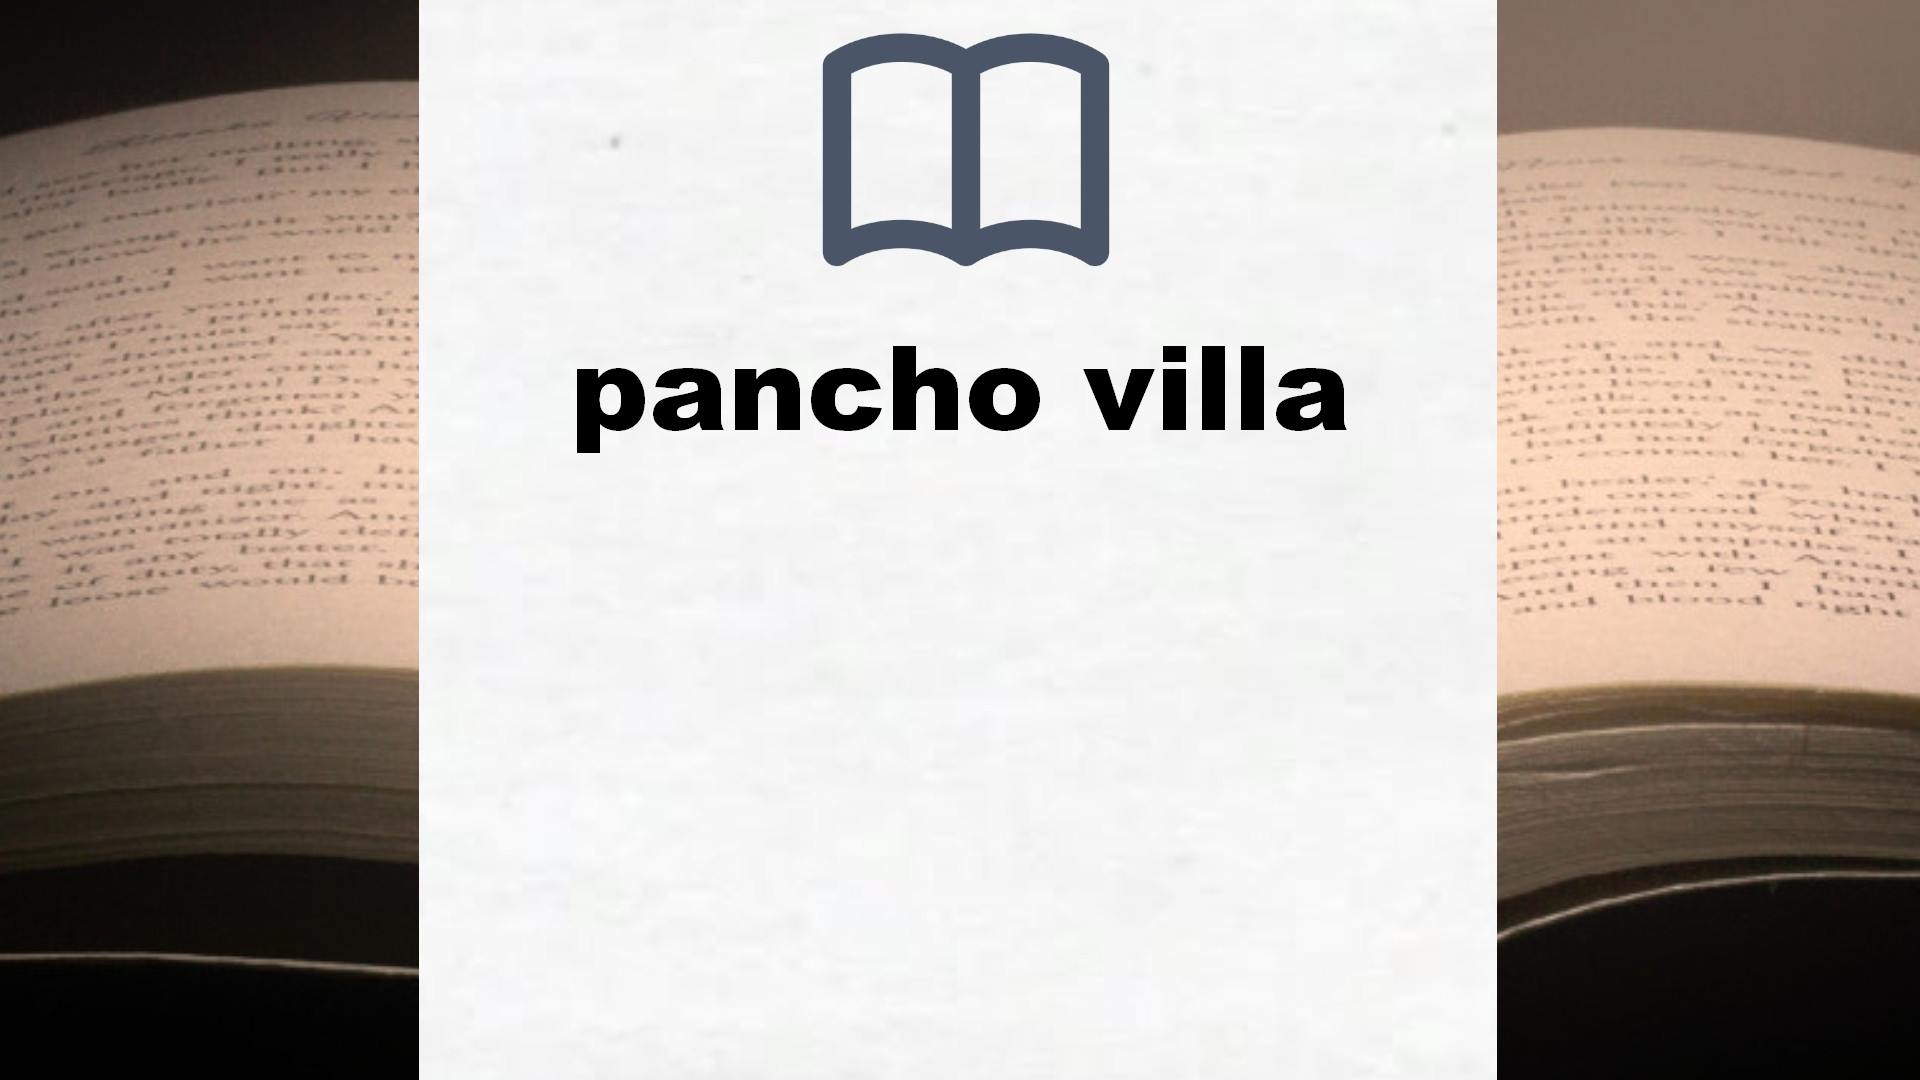 Libros sobre pancho villa